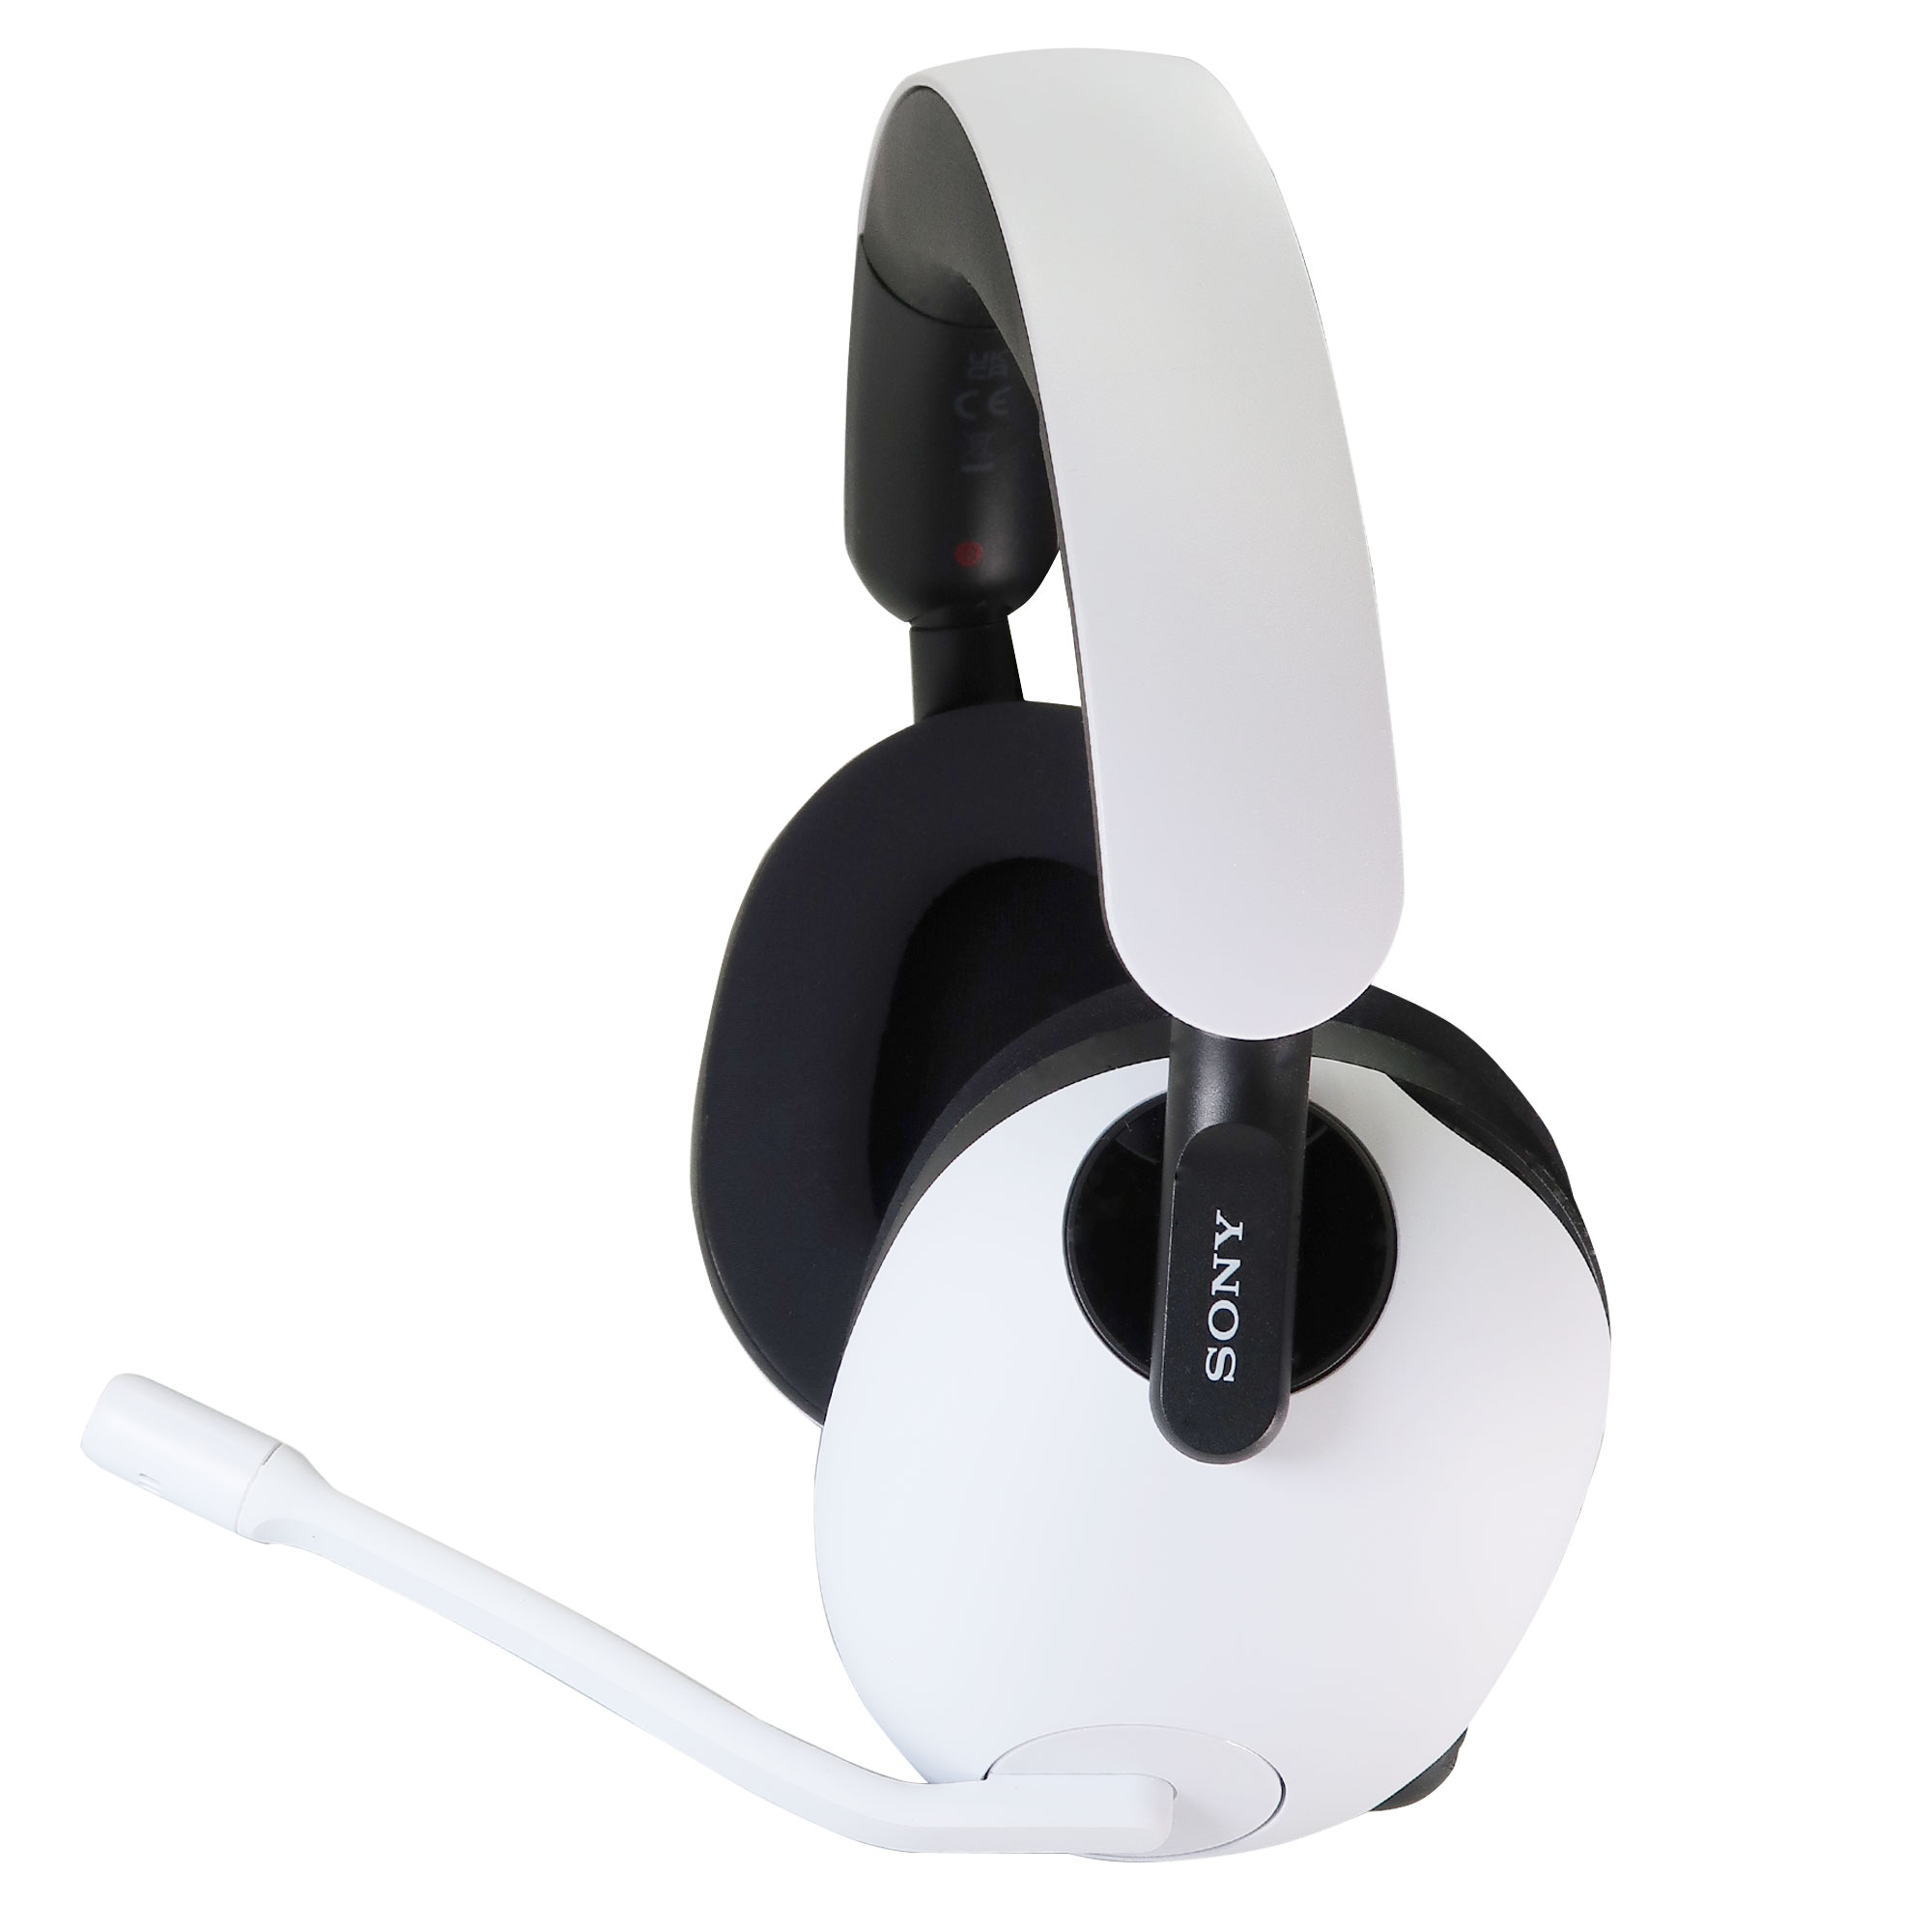 Sony INZONE H7 Wireless Gaming Headset (White)...